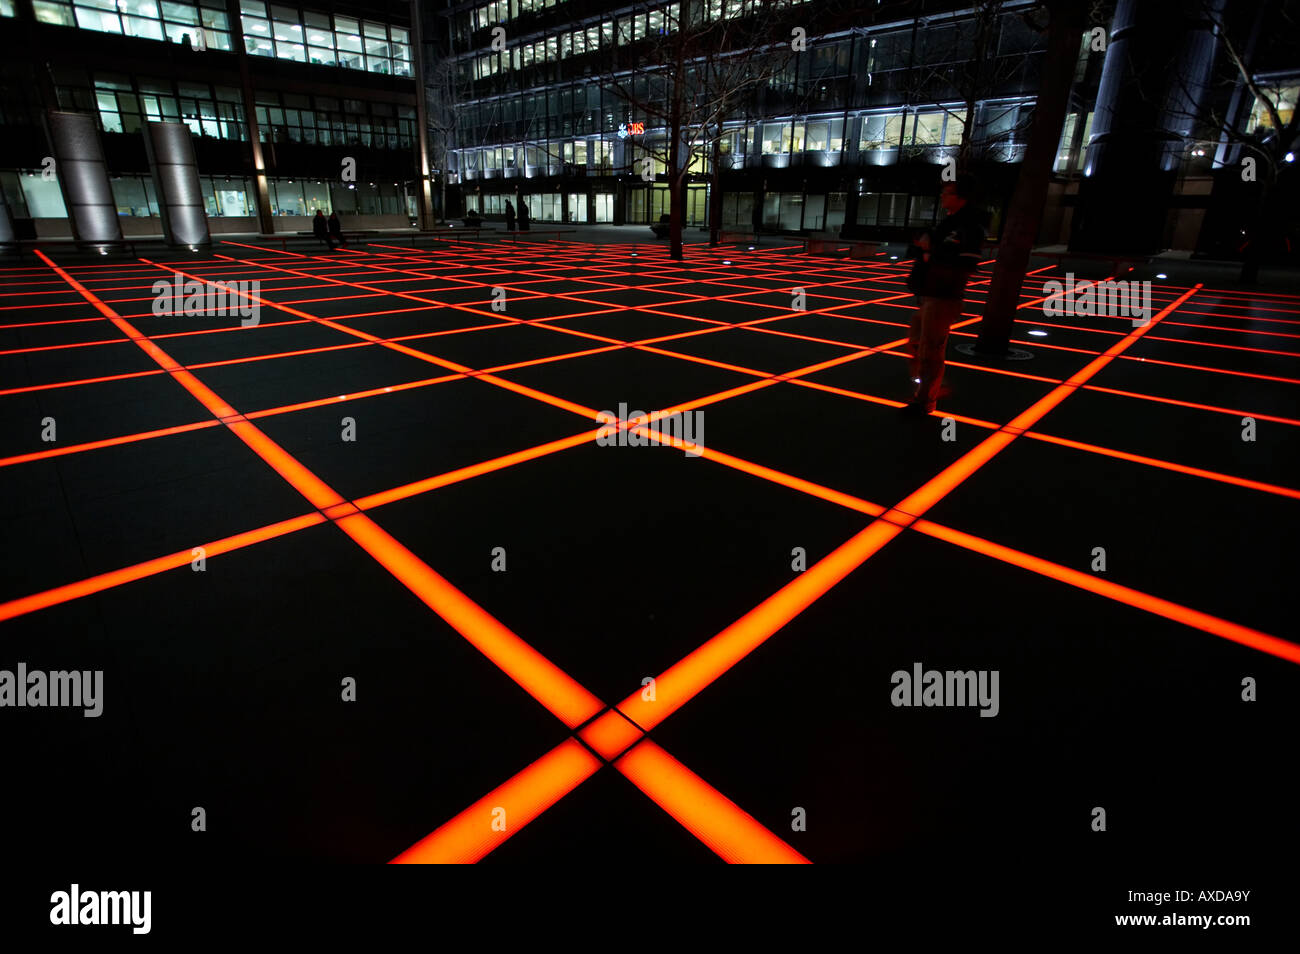 La lumière s'allume sur le terrain de la grille à Londres Angleterre Royaume-uni Banque D'Images